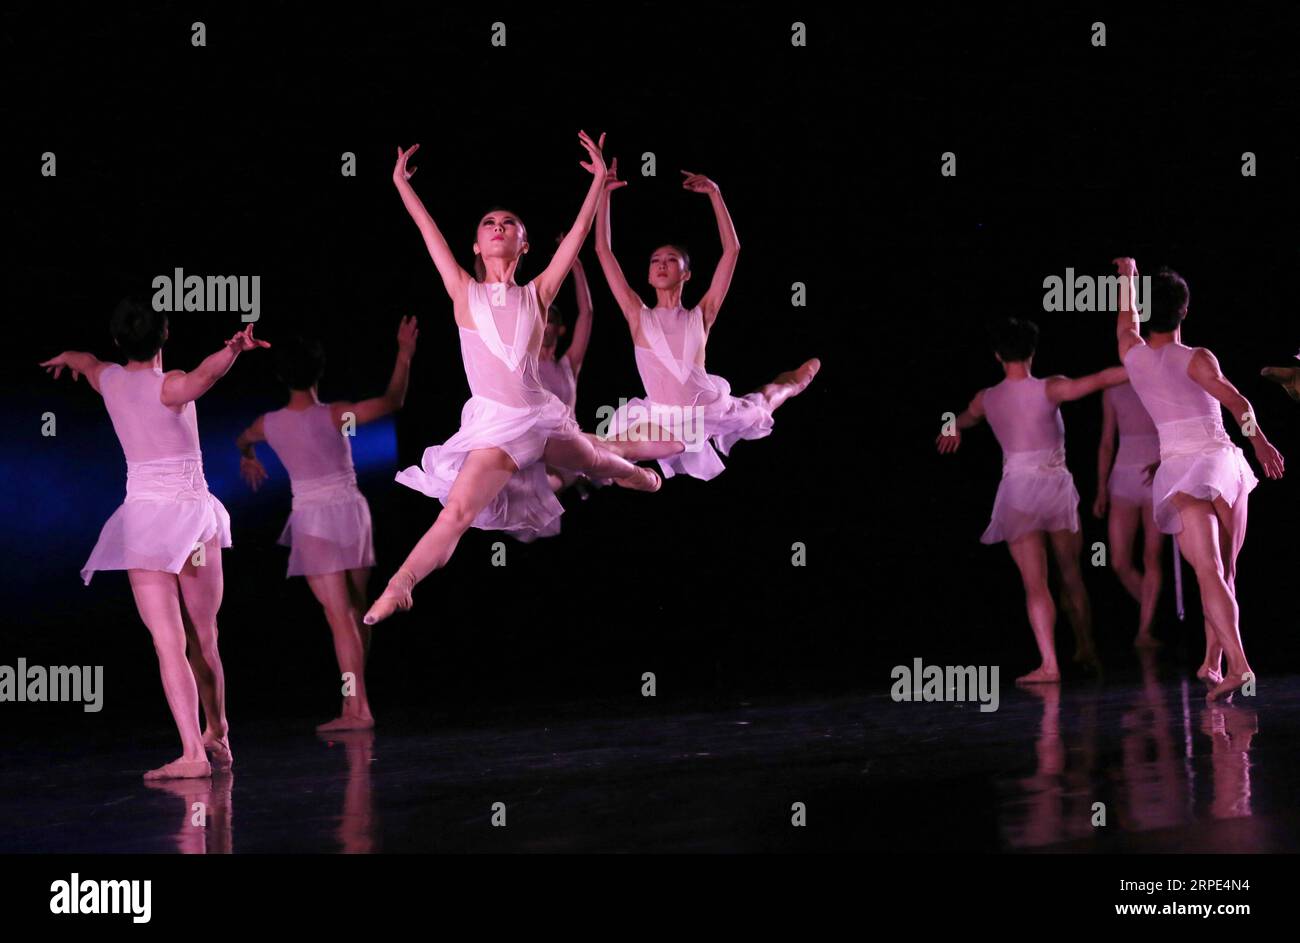 (190818) -- NEW YORK, 18. August 2019 -- Künstler treten während des Balletts Carmina Burana am 17. August 2019 im Lincoln Center in New York auf. Guangzhou Ballet, eine bekannte chinesische Truppe, gab am Samstagabend ihr Debüt in New York City im David H. Koch Theater im Lincoln Center und brachte über 1.800 Zuschauern das chinesische Ballett der Spitzenklasse. Mit einer Kombination aus westlichen und orientalischen Ballettstilen präsentierte Guangzhou Ballet zwei Produktionen in einer Show. ) U.S.-NEW YORK-CHINA-BALLETT Qinxlang PUBLICATIONxNOTxINxCHN Stockfoto